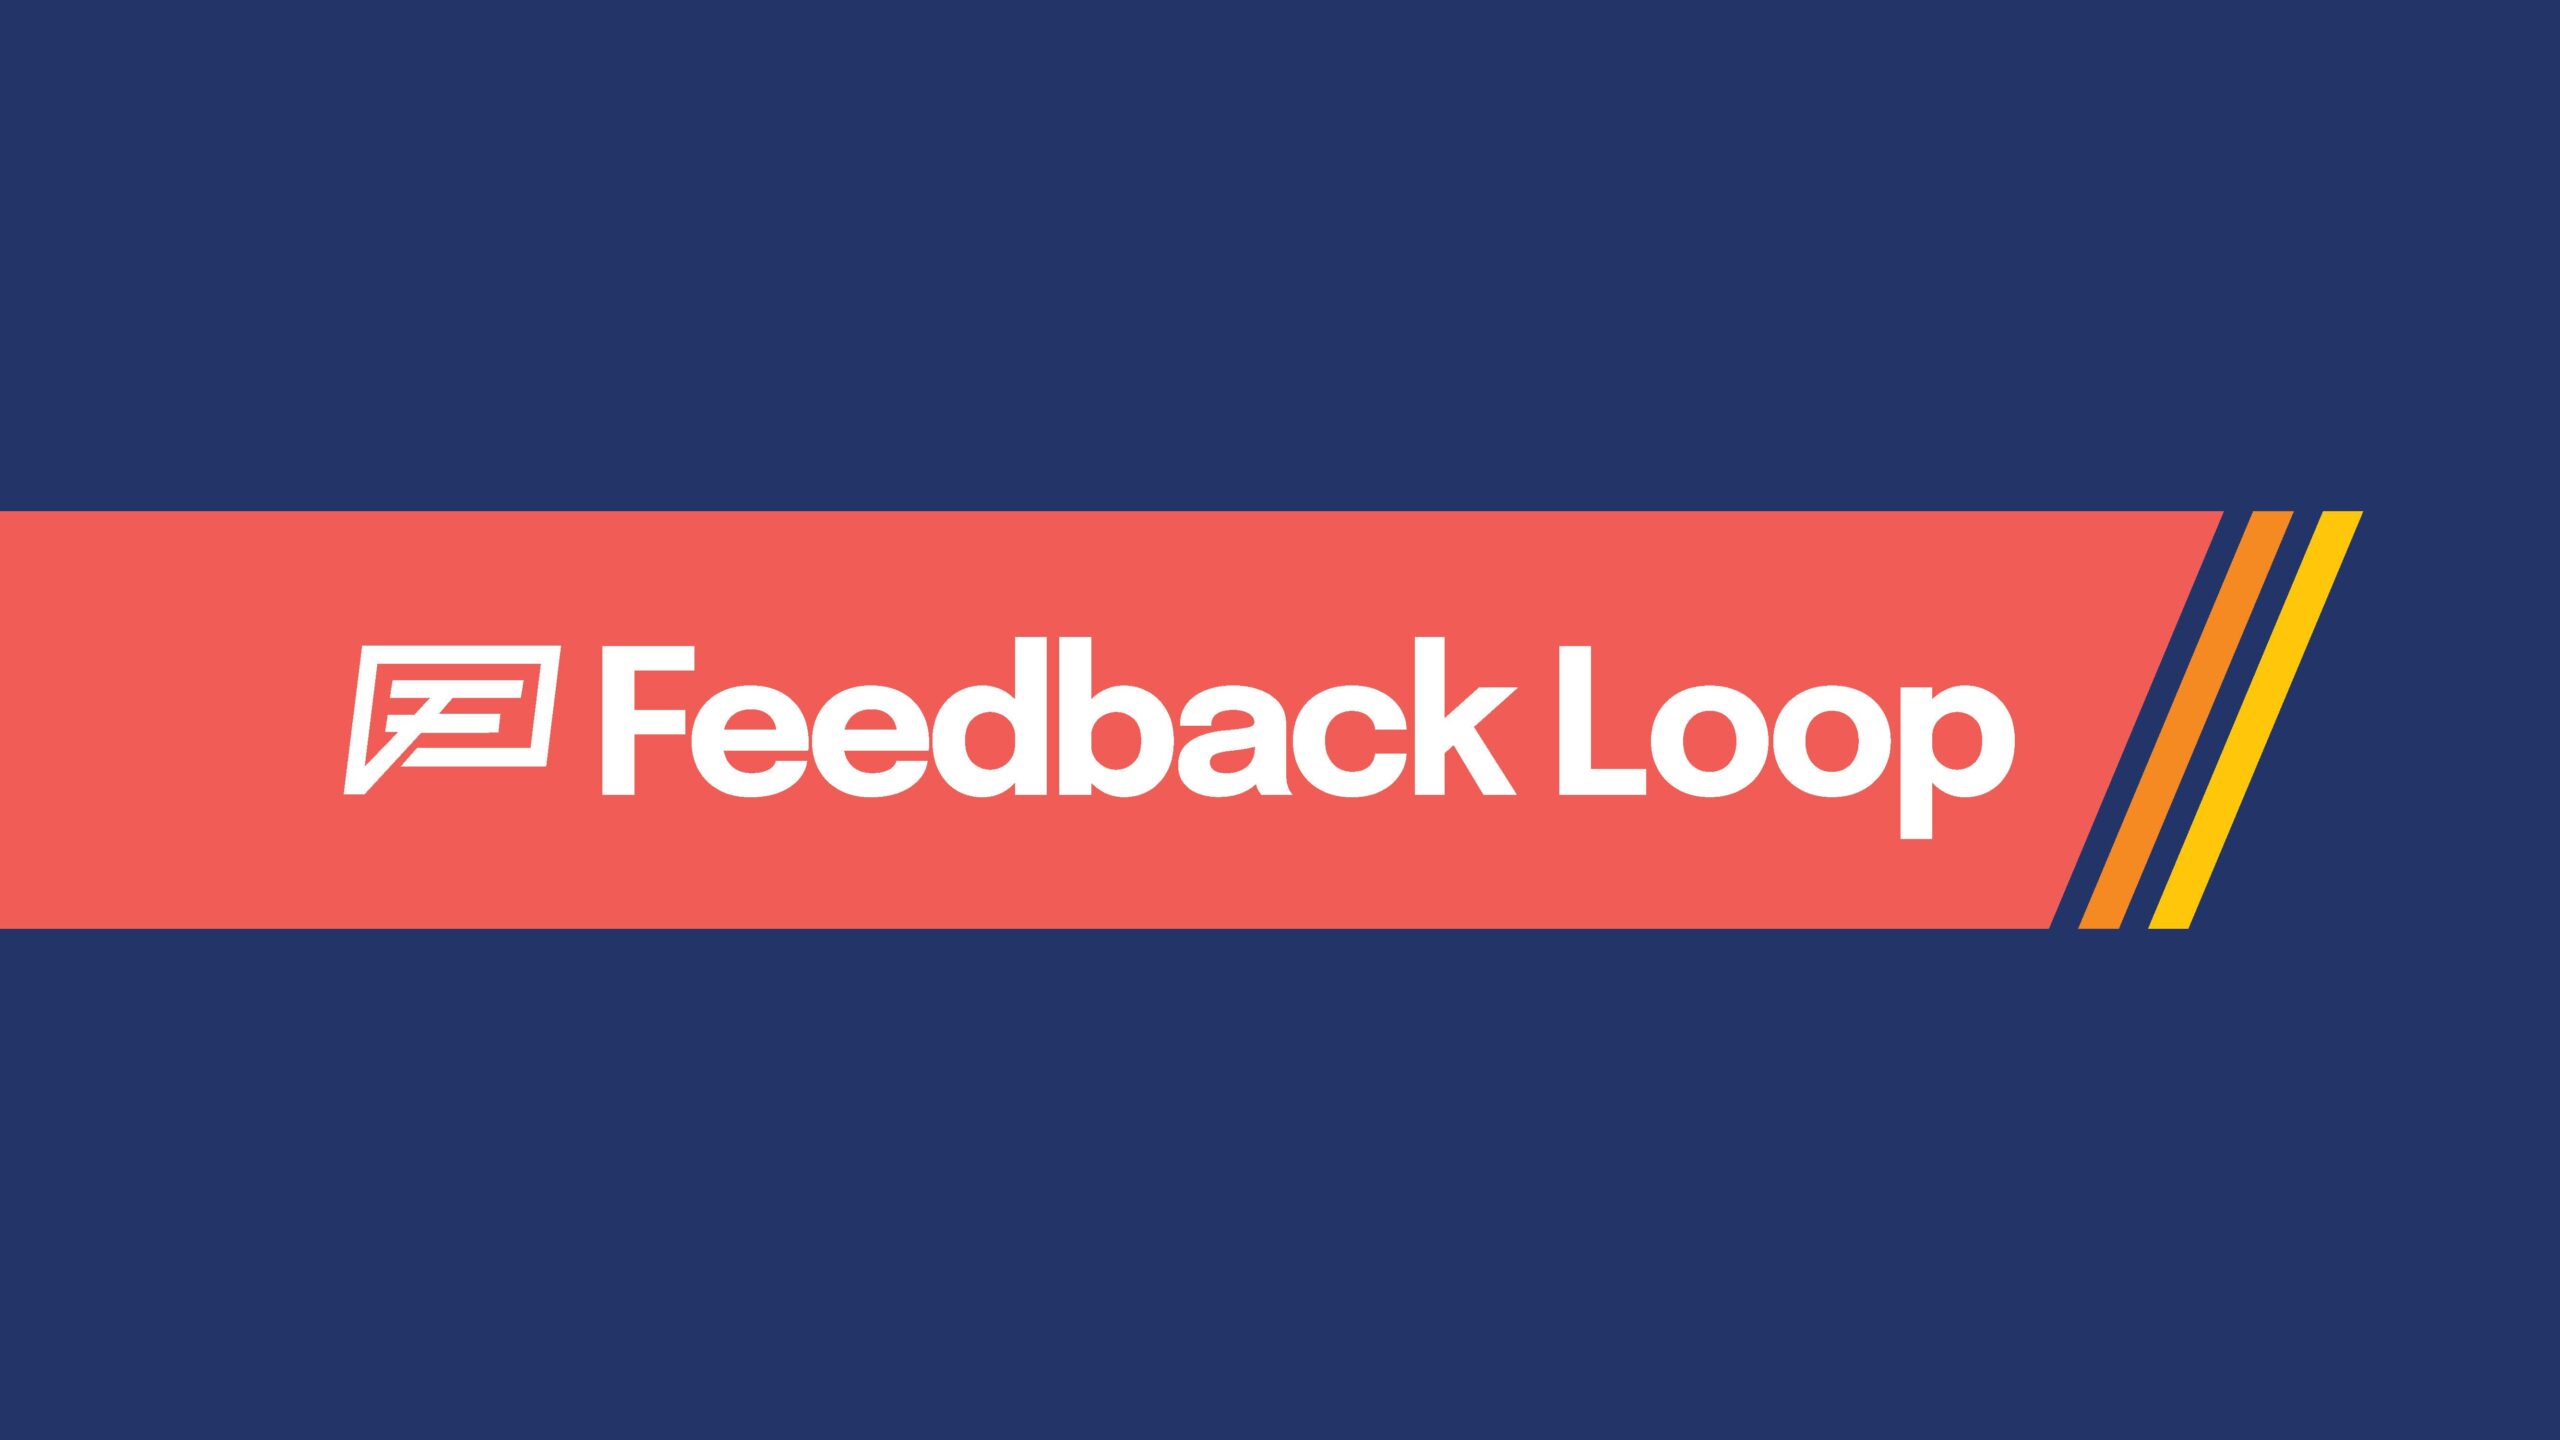 Feedback-Loop-Style-Frames_Page_01